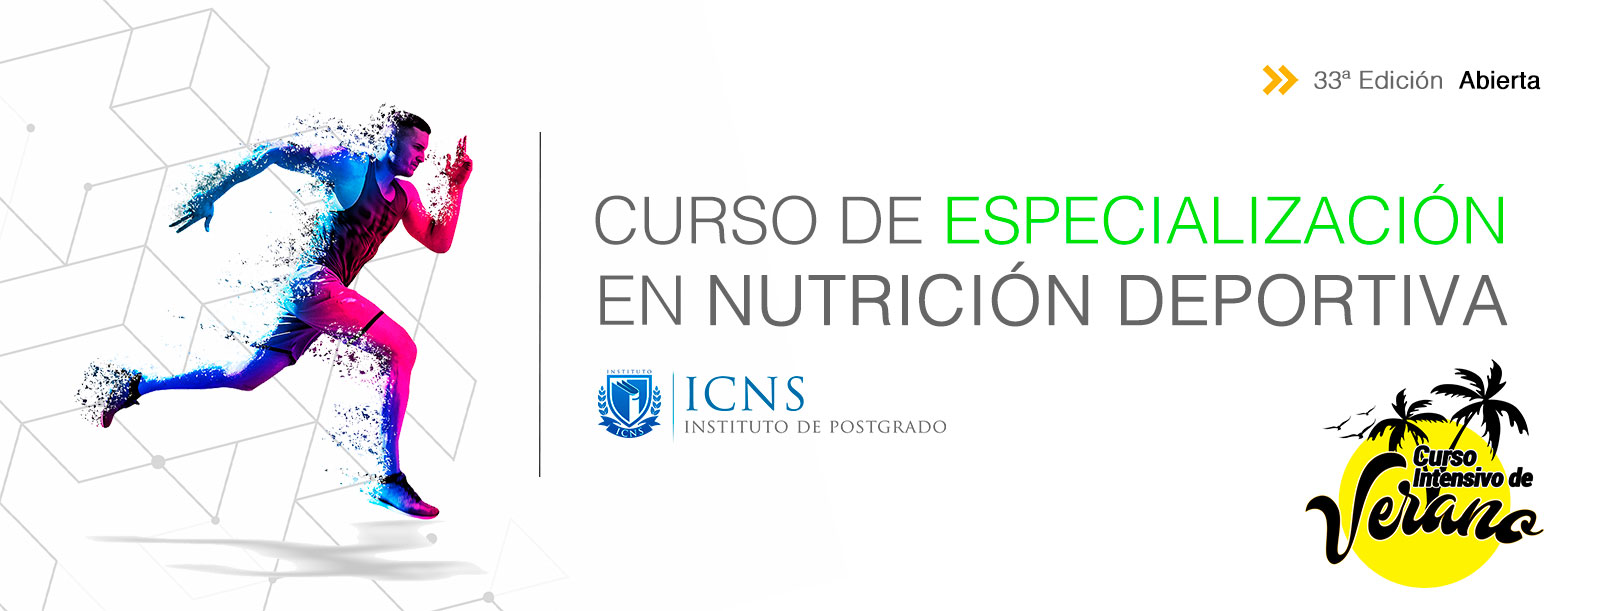 Curso de Especializaci�n en Nutrici�n Deportiva